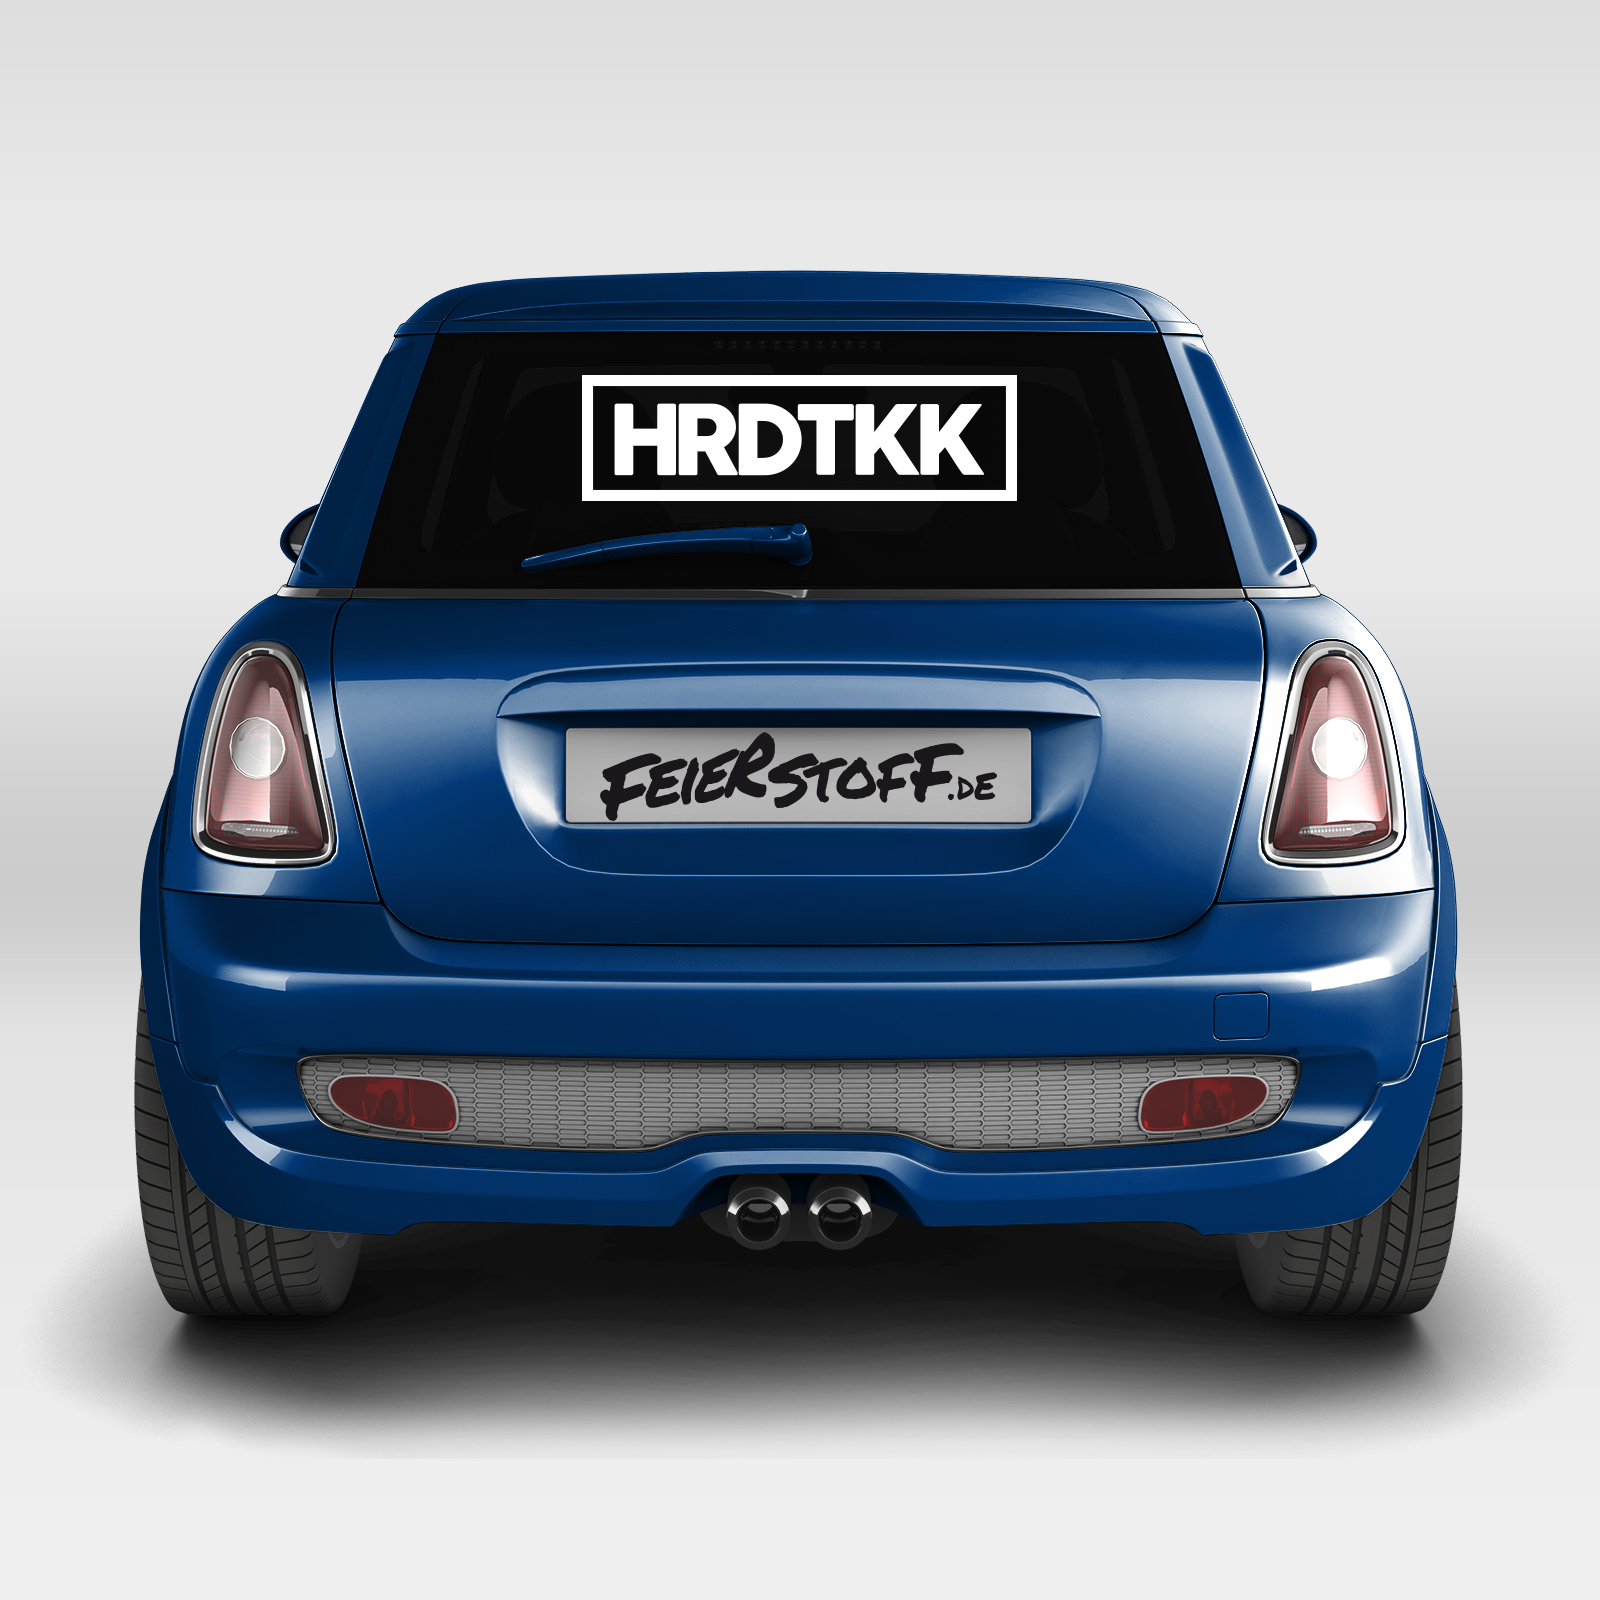 HRDTKK - Autoaufkleber, HRDTKK, Merchandise